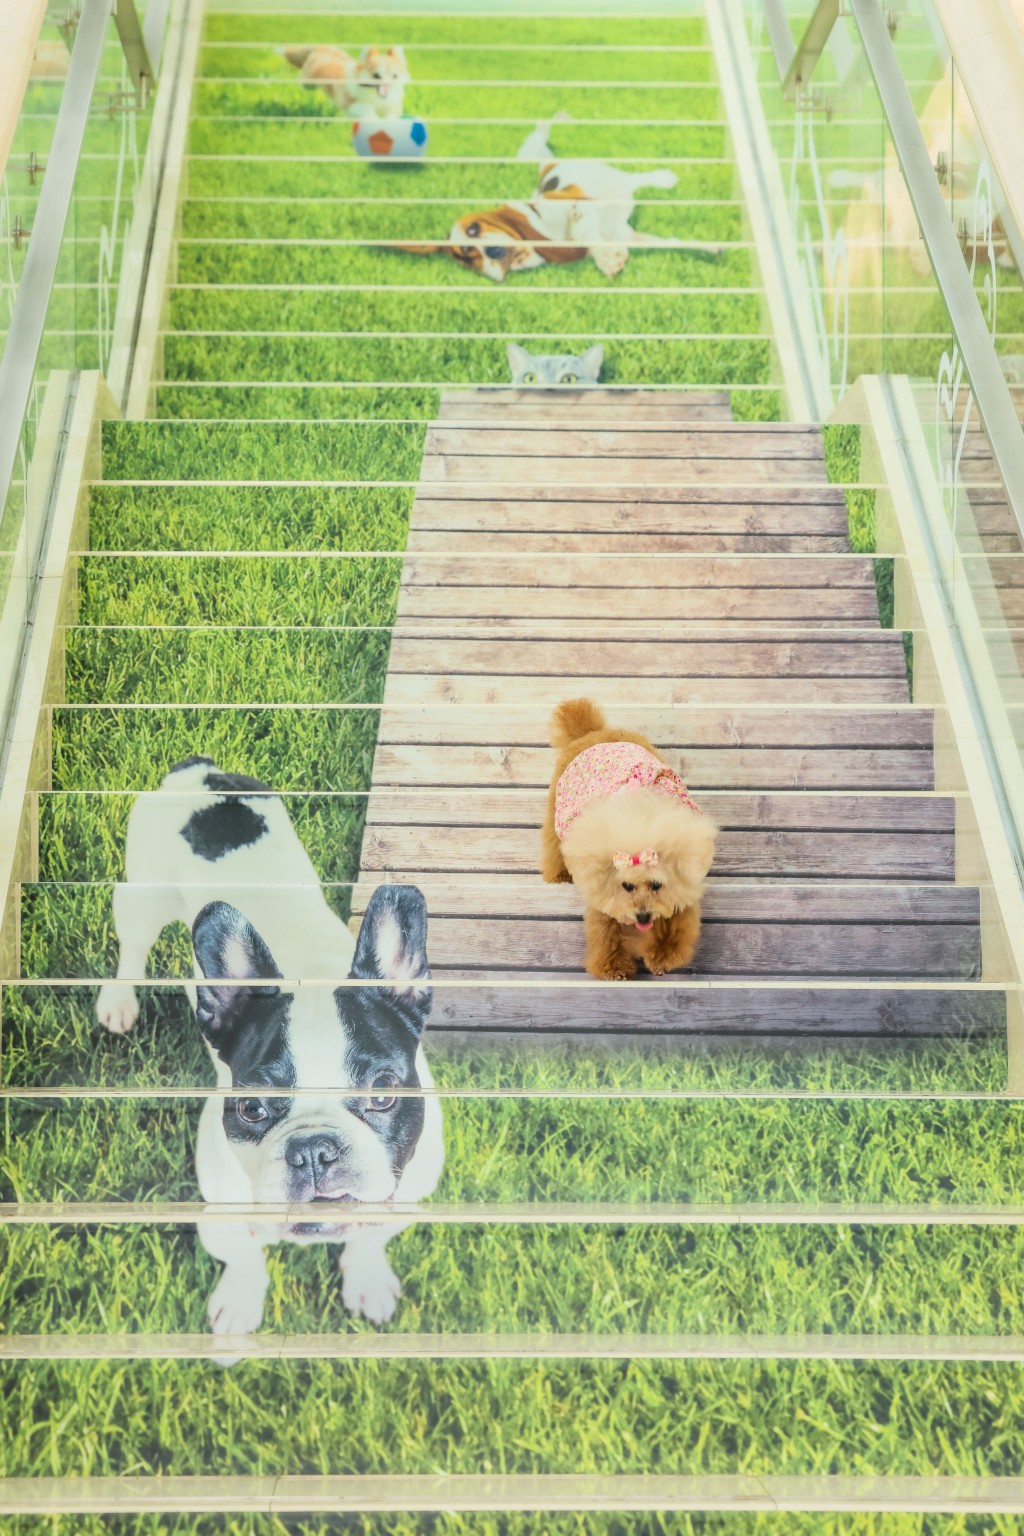 山頂廣場食玩買攻略｜藝術階梯：仔細看看木梯上有隻可愛小貓蓄勢待發，像要捕捉獵物，像真情景讓你及毛孩仿佛置身寵物樂園。